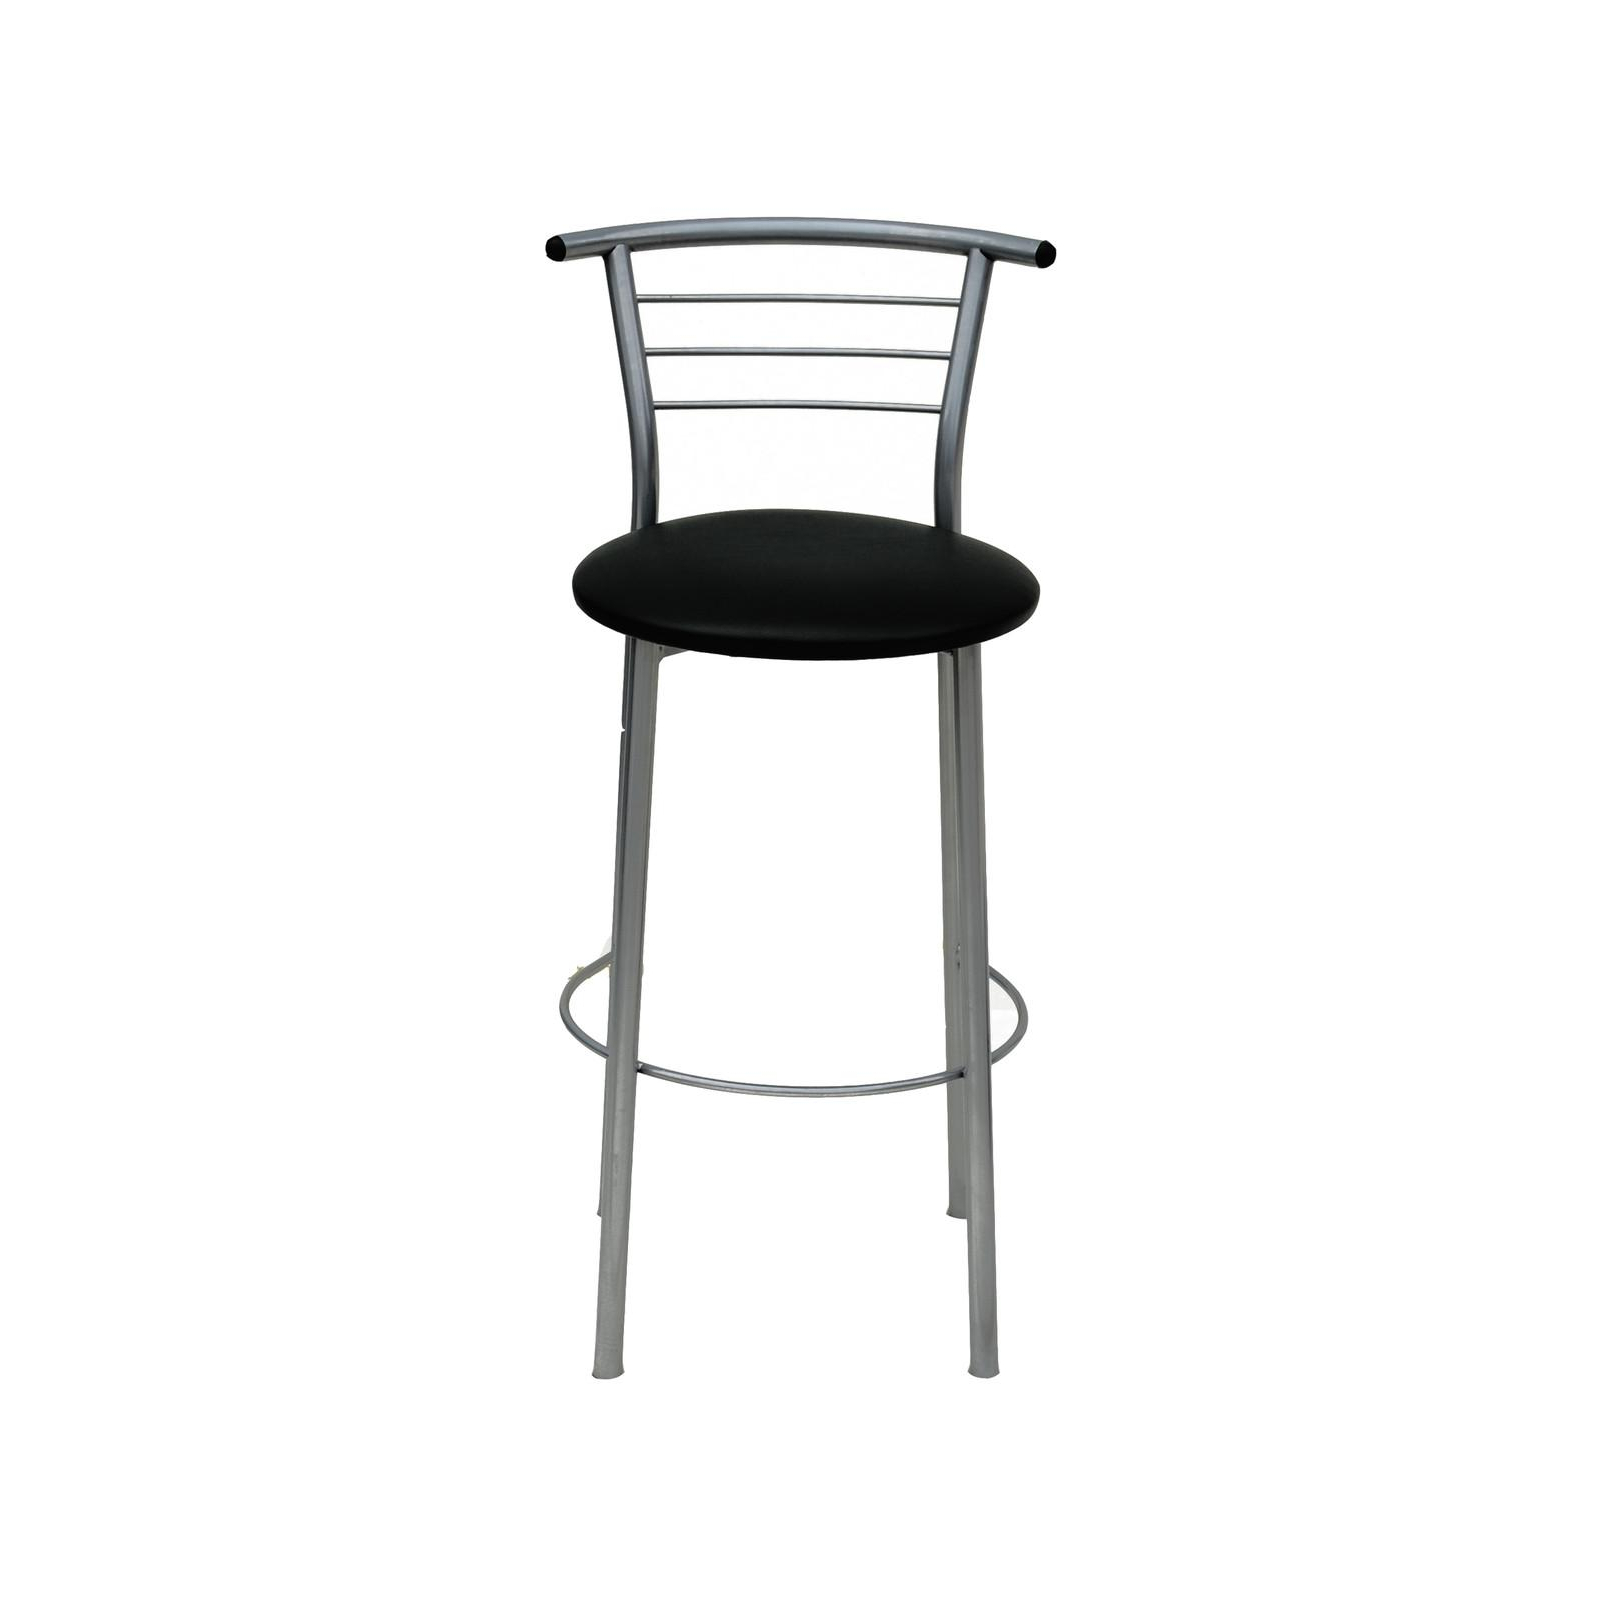 Барный стул Примтекс плюс барный 1011 Hoker alum CZ-3 Black (1011 HOKER alum CZ-3)